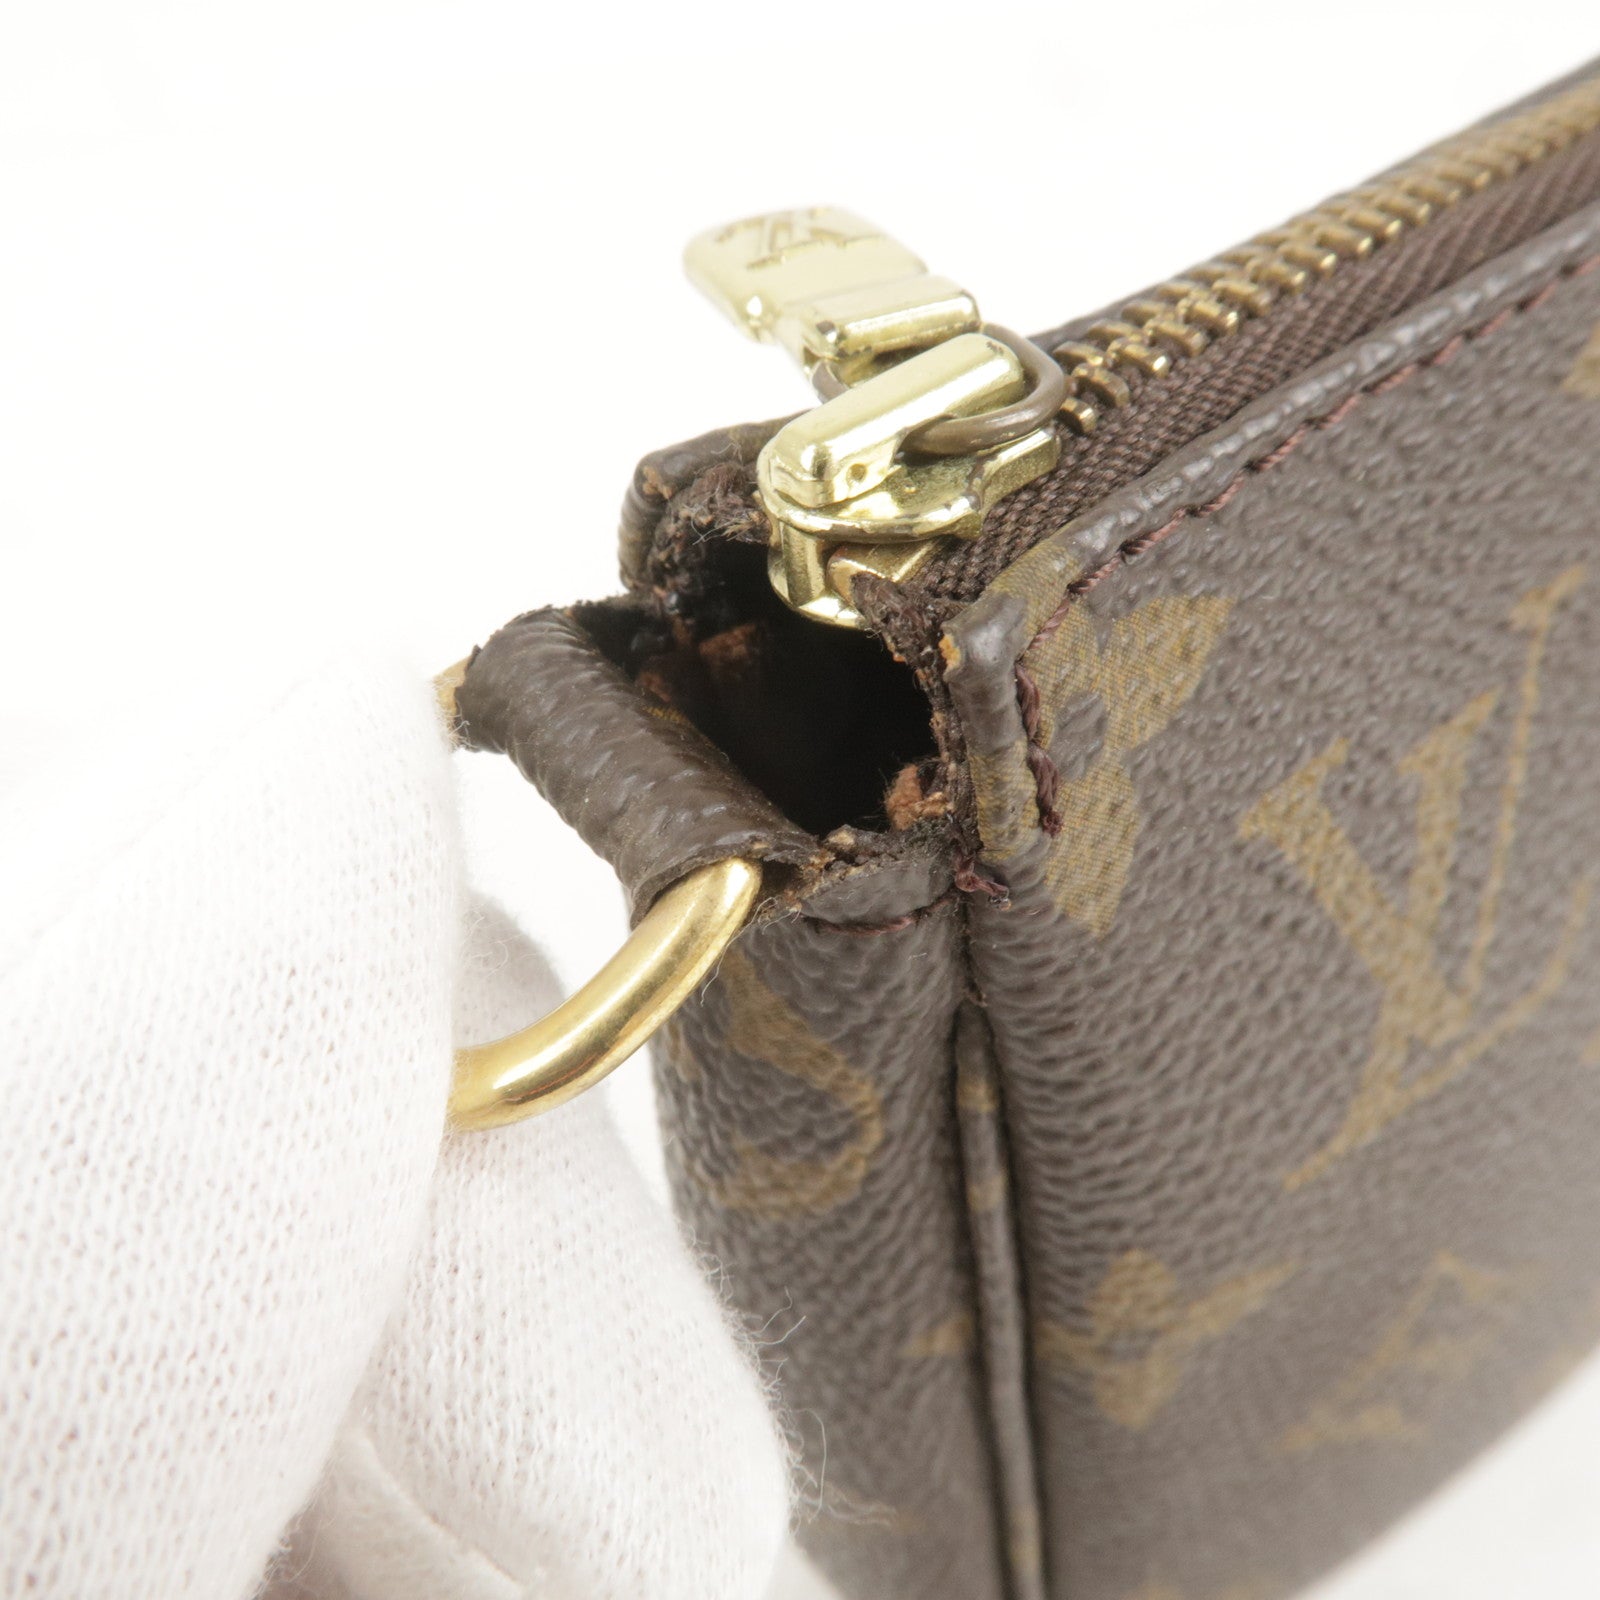 LOUIS VUITTON Pochette Accessoires M51980 Monogram Handbag